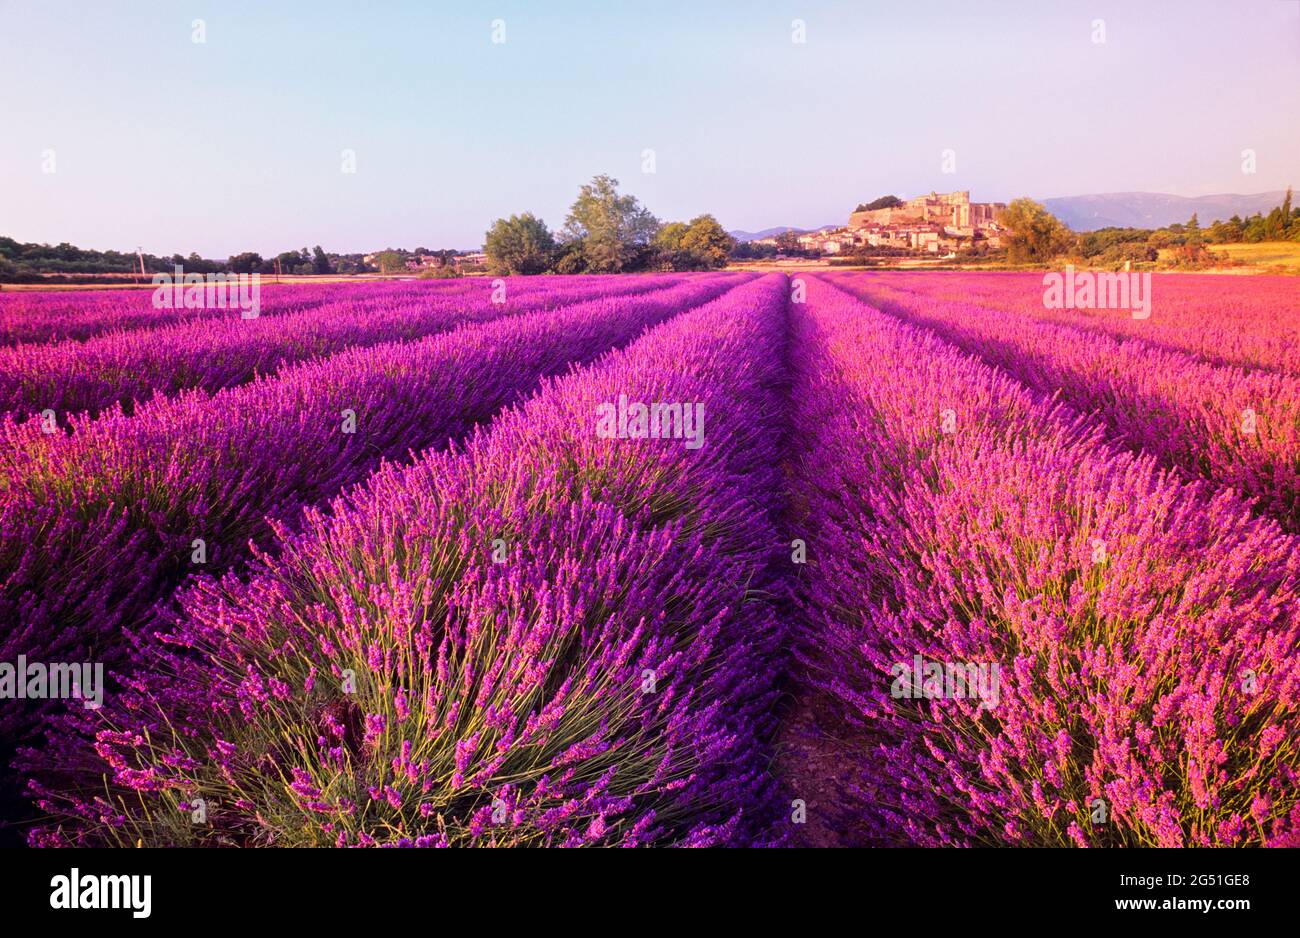 Paisaje con campo de lavanda púrpura, Grignan, Provenza, Francia Foto de stock